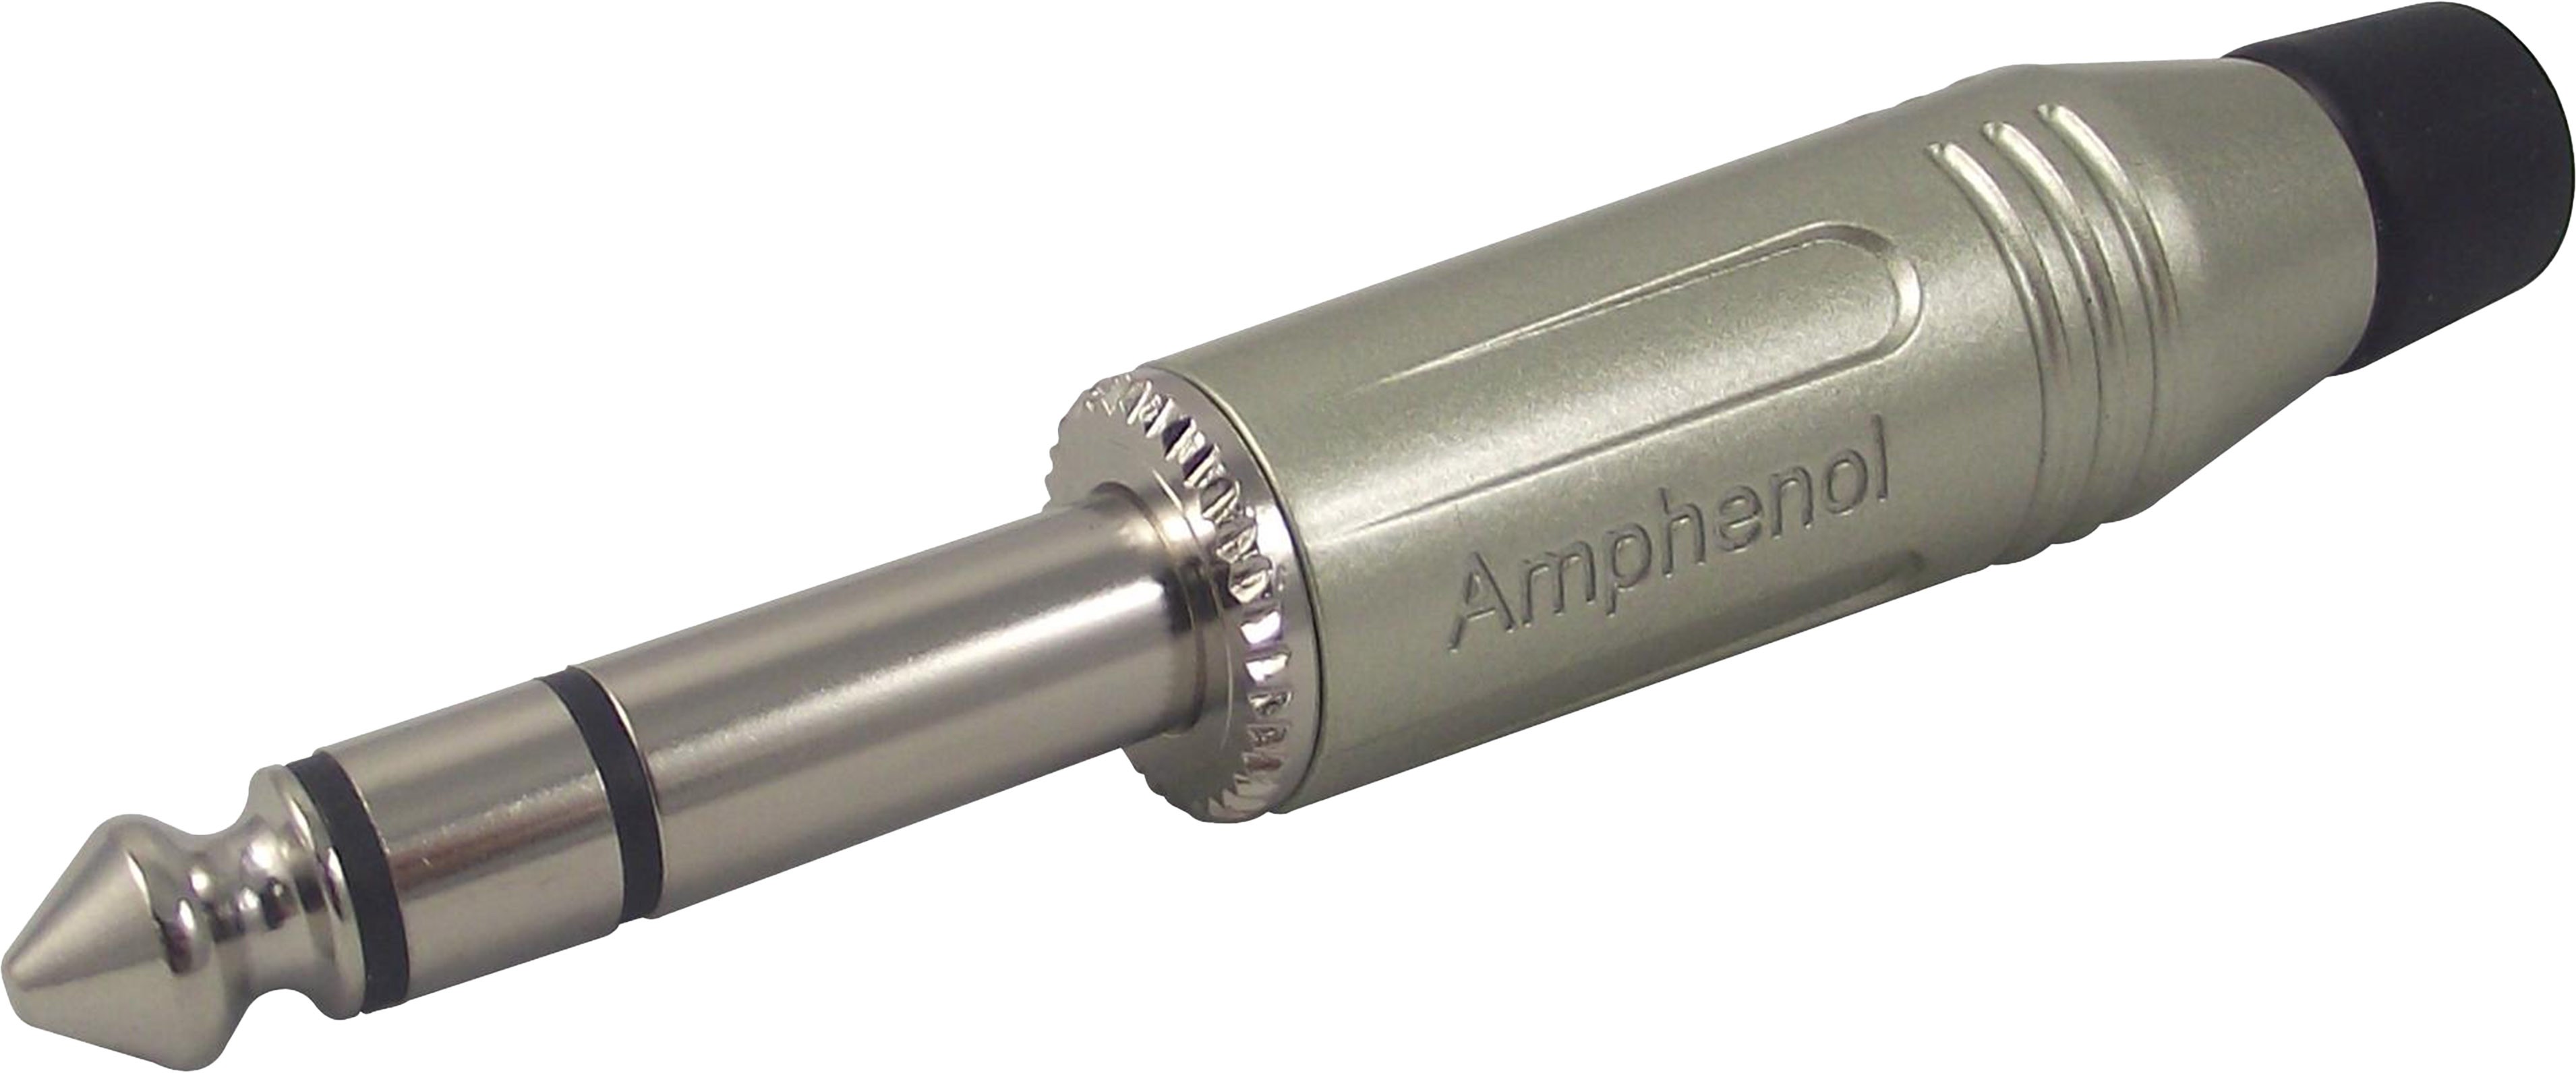 AMPHENOL ACPS-GN Connecteur Jack 6.35mm Stéréo Mâle Ø7mm